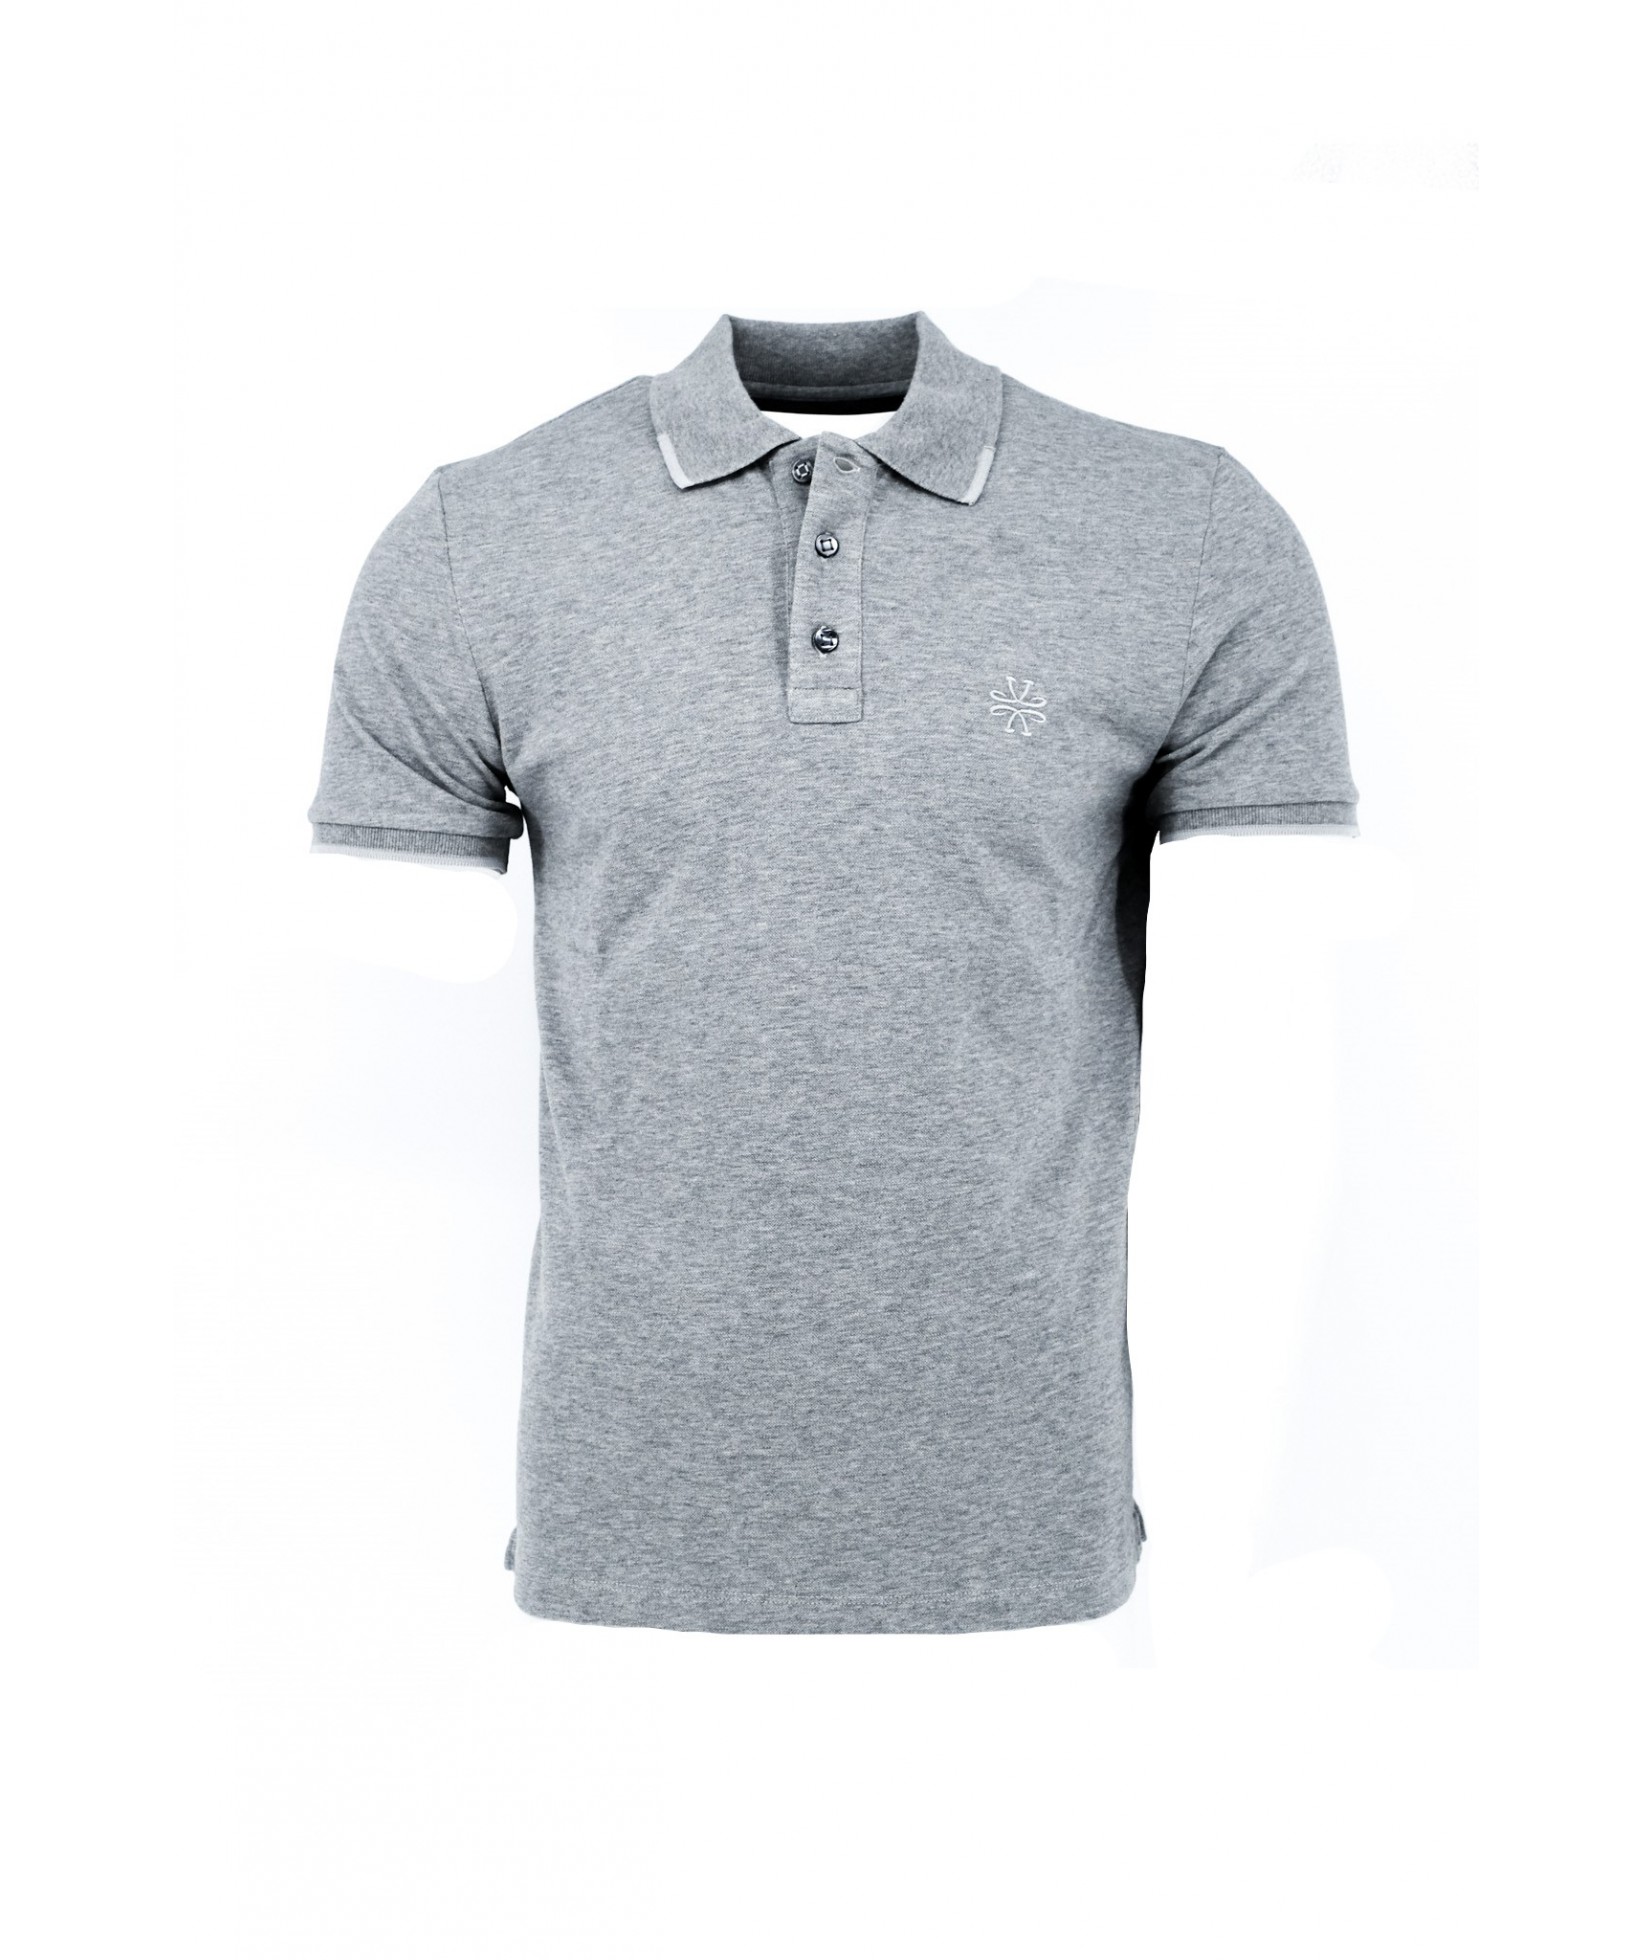 Jacob Cohen Polo shirt grey (37231)